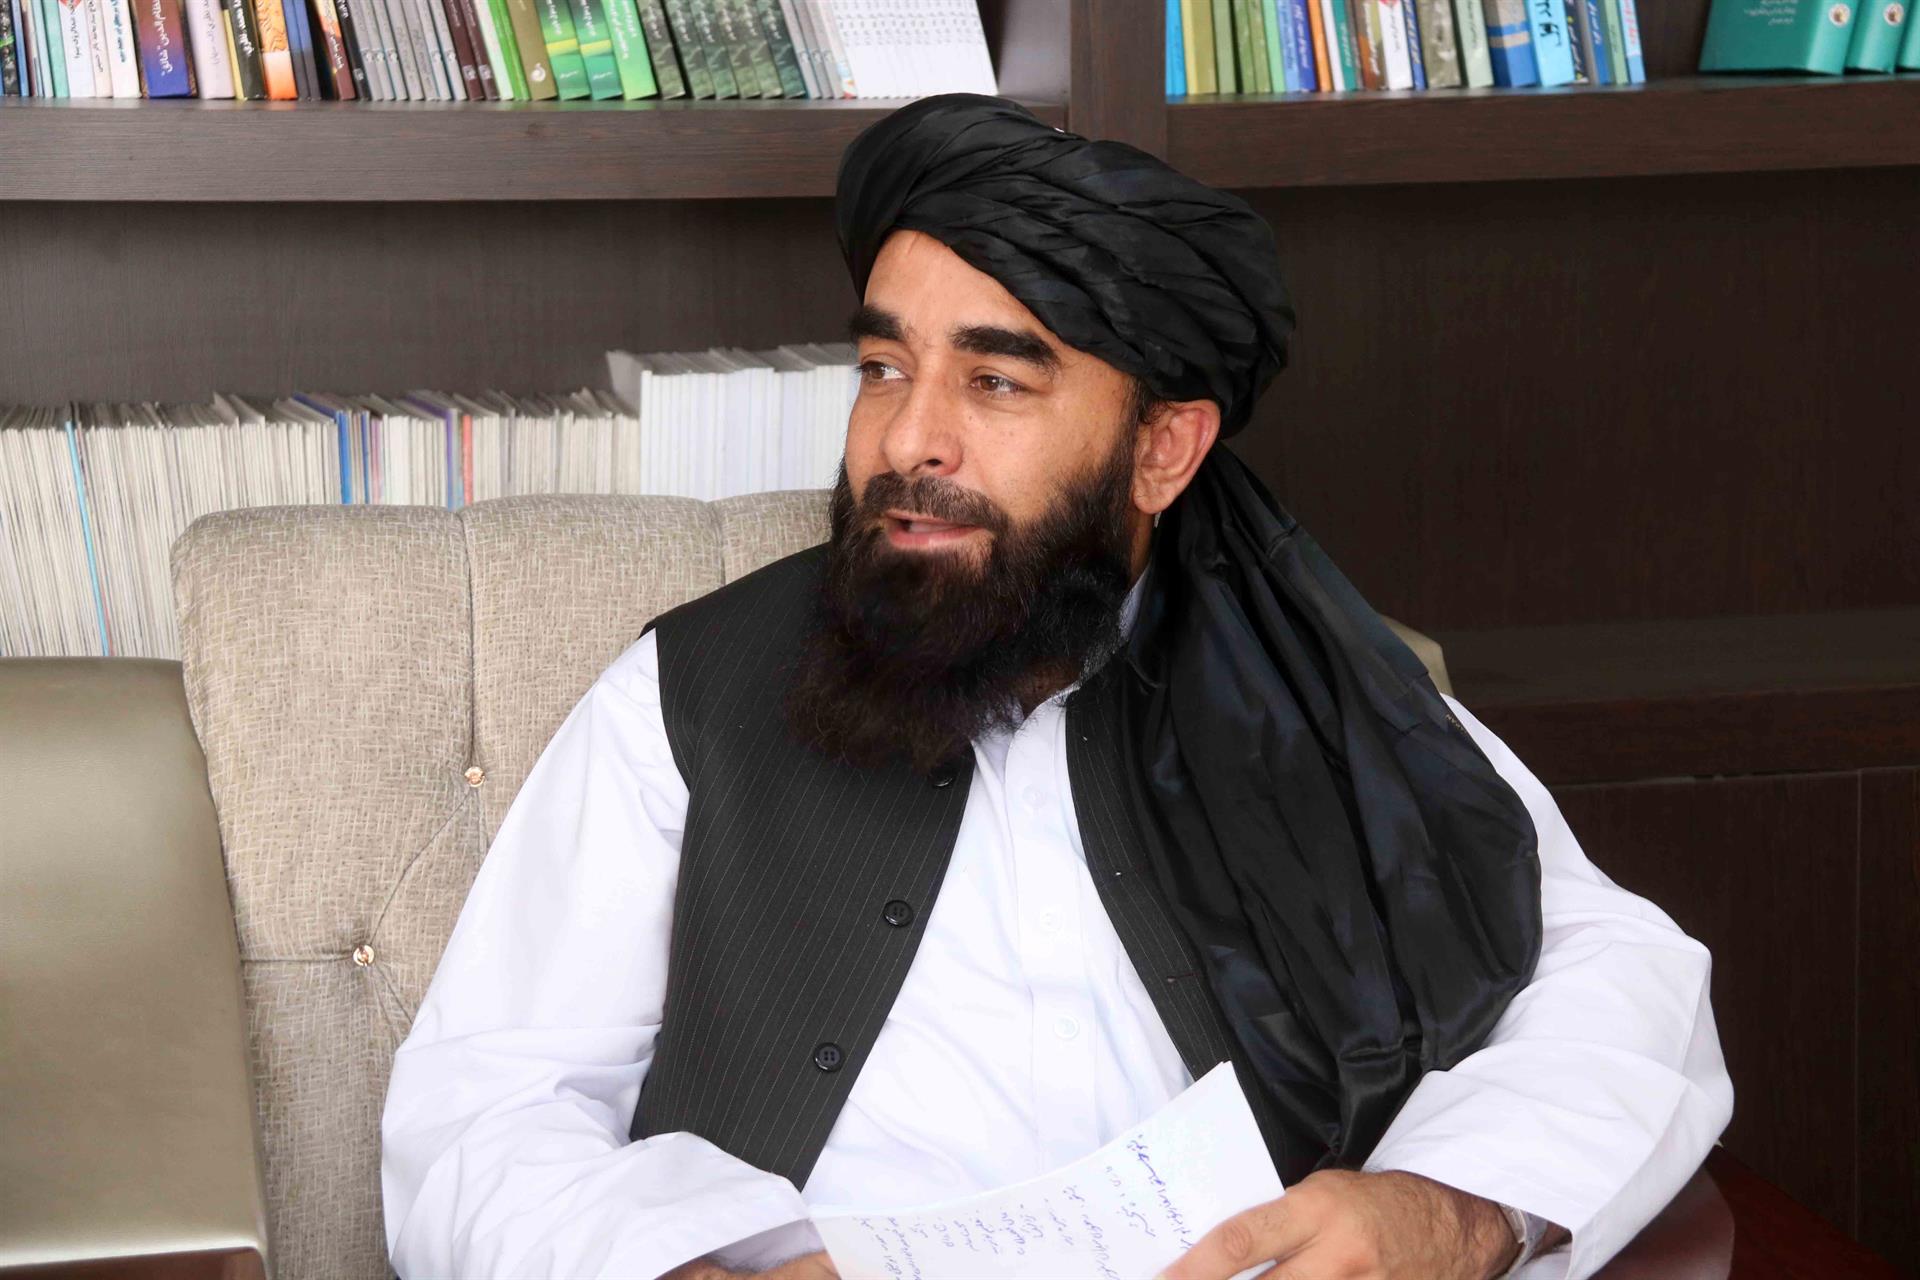 Uno de los portavoces talibanes aseguró, en una conversación con The New York Times, que la música estará prohibida en espacios públicos, tal como en el régimen de 1996 al 2001.